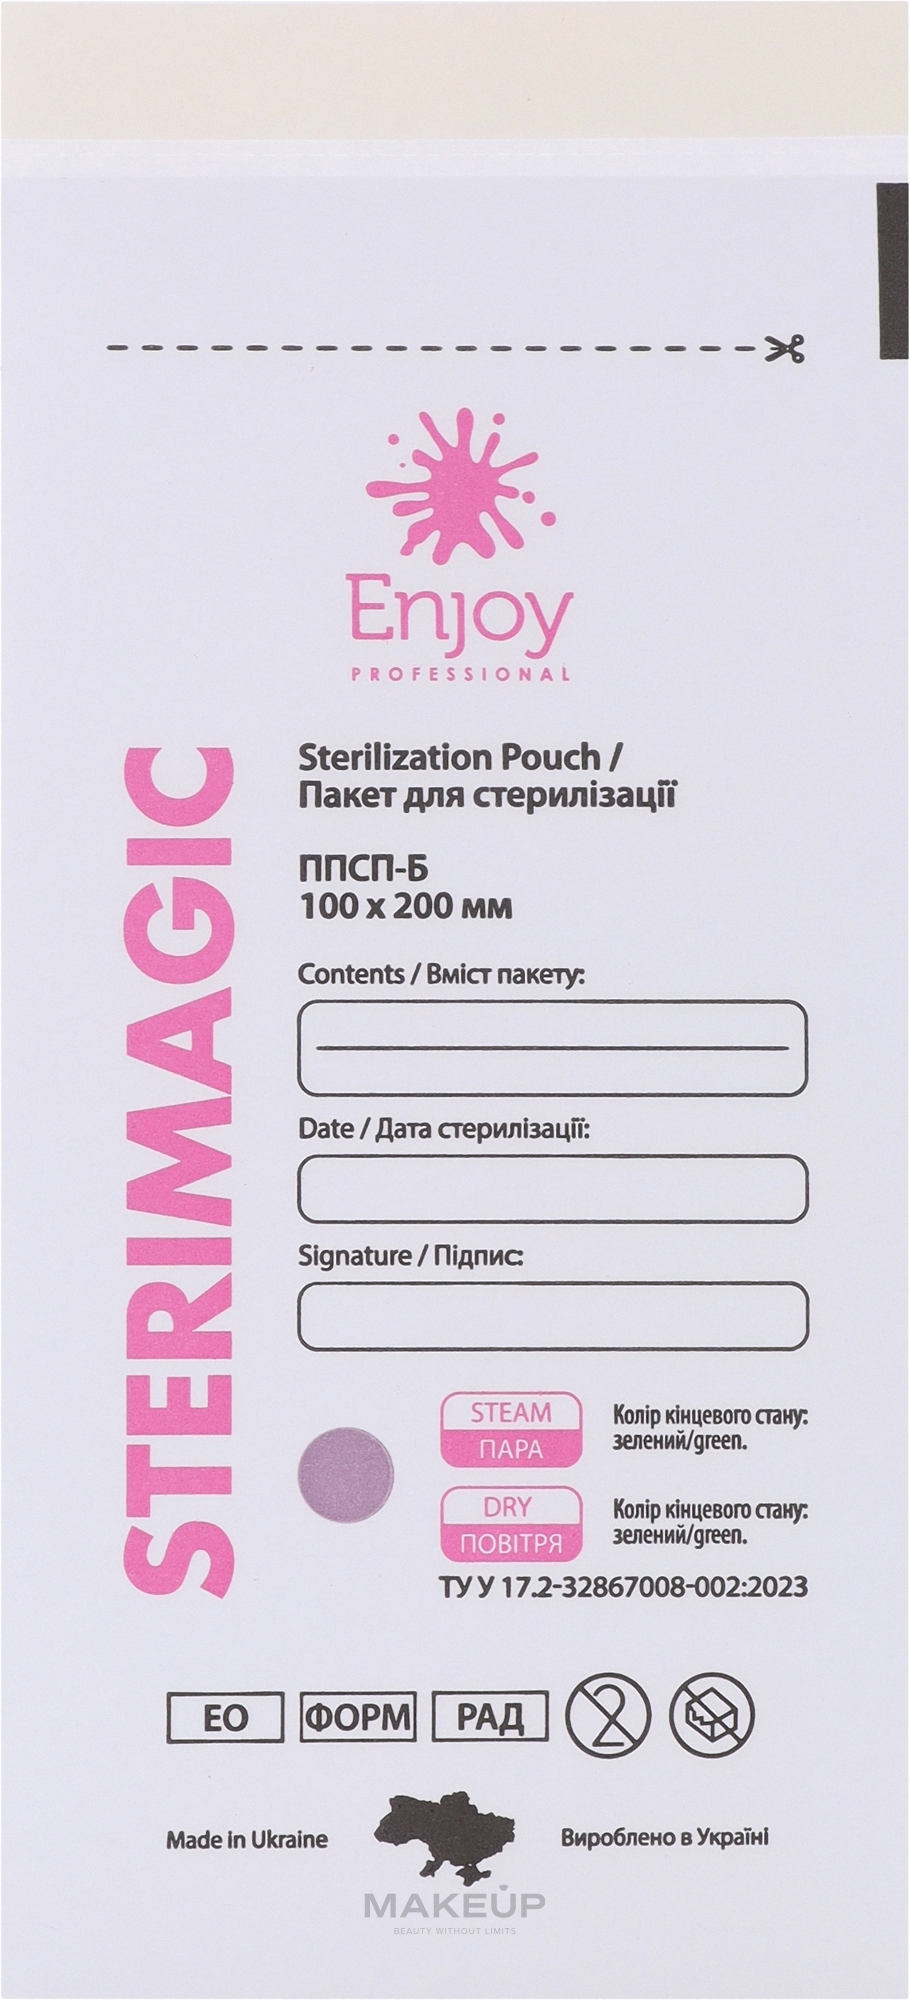 Пакеты для стерилизации из белой влагостойкой бумаги ППСП-Б, 100х200 мм - Enjoy Professional SteriMagiс — фото 50шт